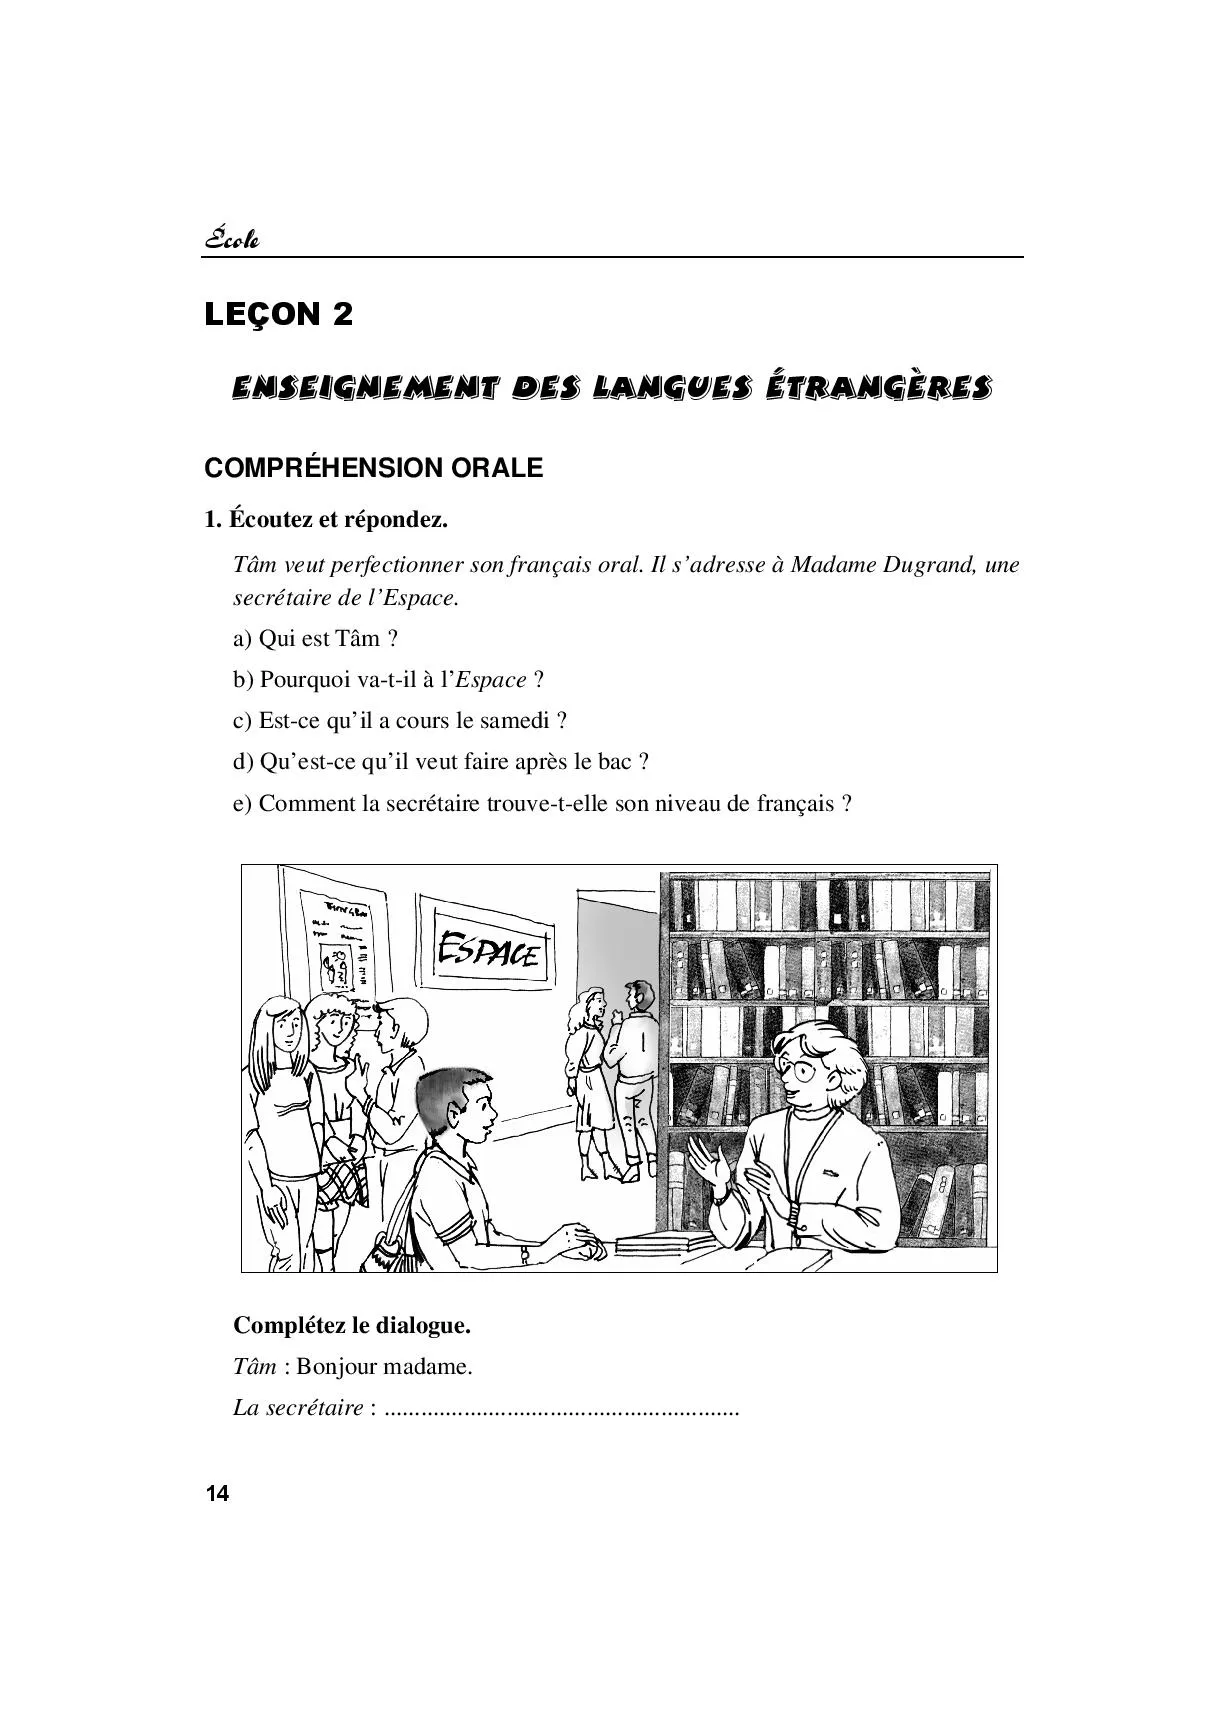 Leçon 2: Enseignement des langues étrangères. 